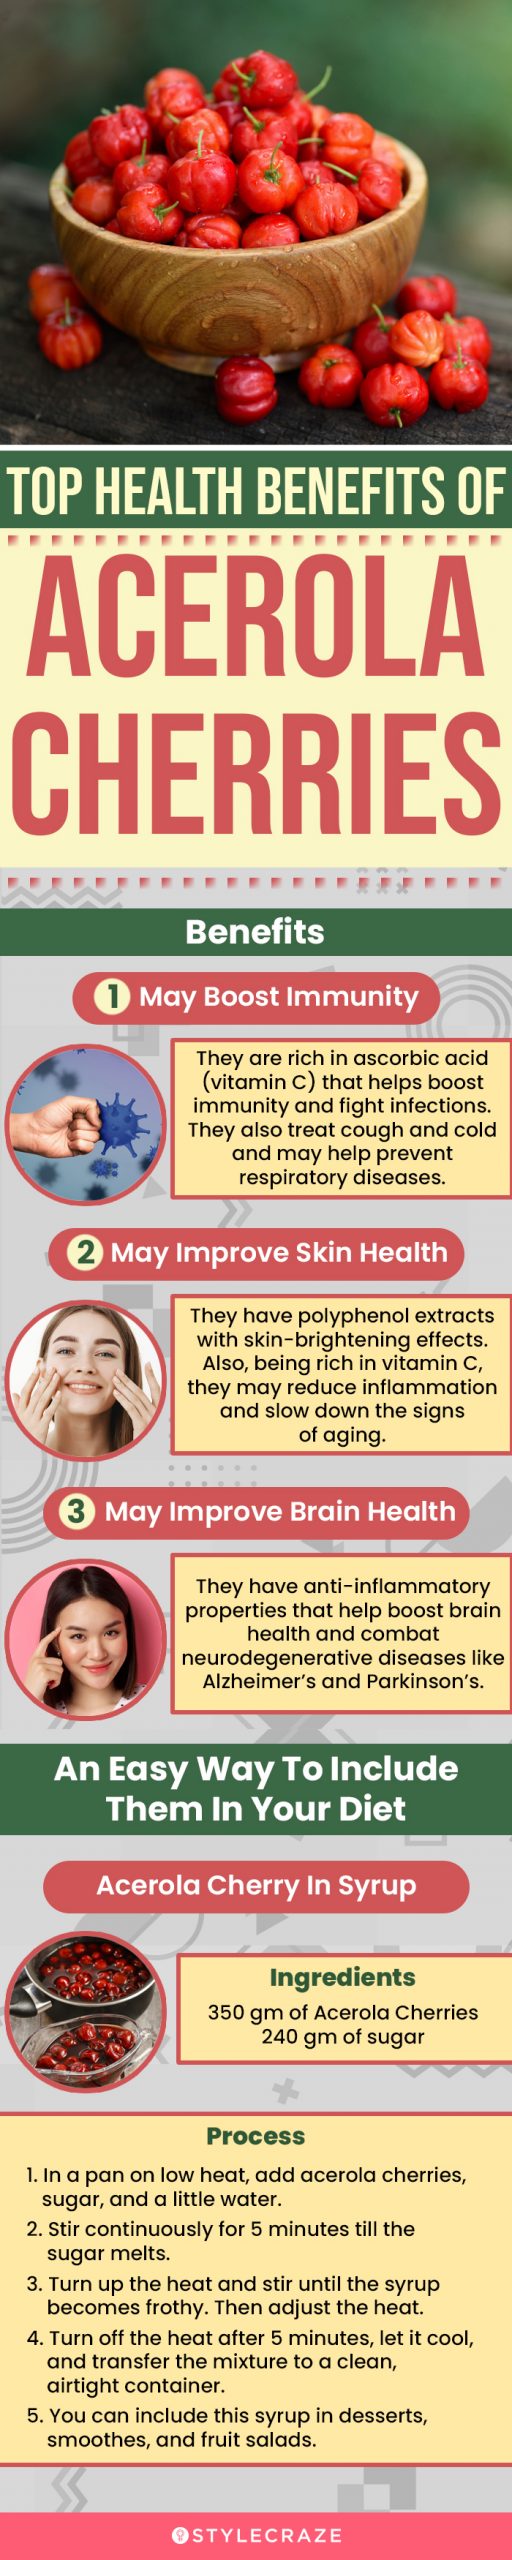 top health benefits of acerola cherries (infographic)